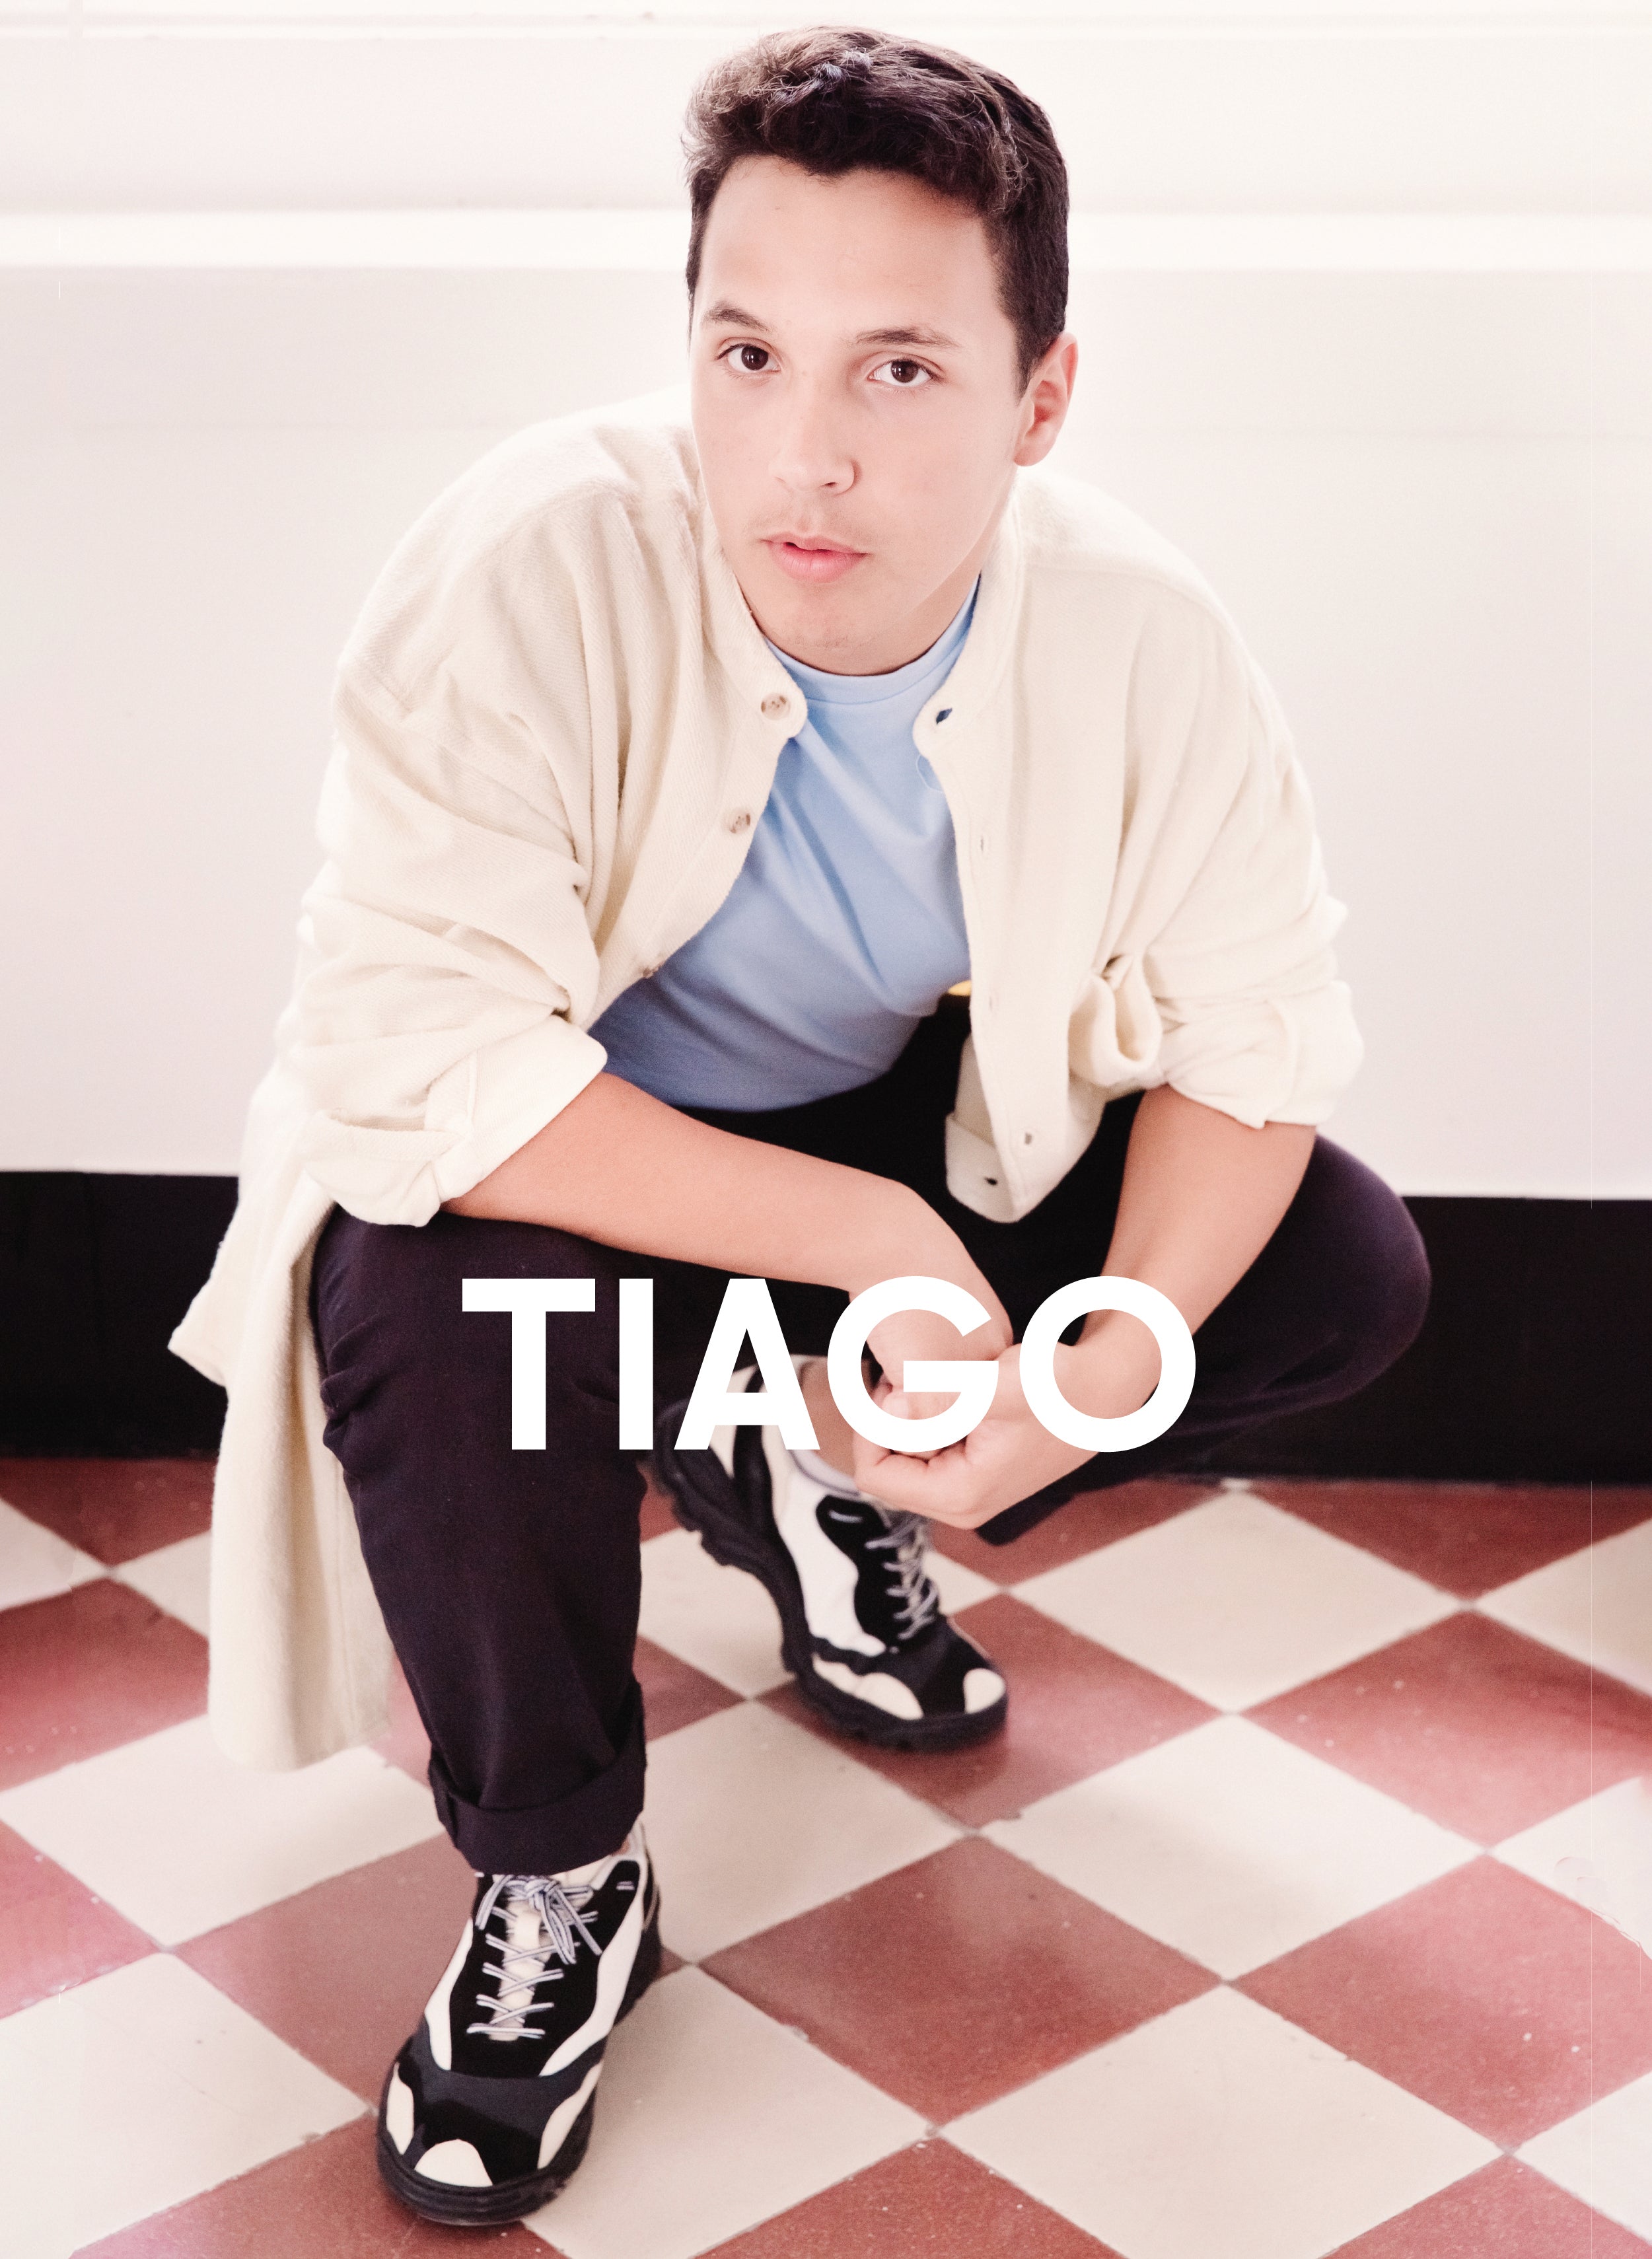 Tiago in camicia blu e nera Diverge sneakers Promuovere l'impatto sociale e le scarpe personalizzate attraverso il progetto Imagine.